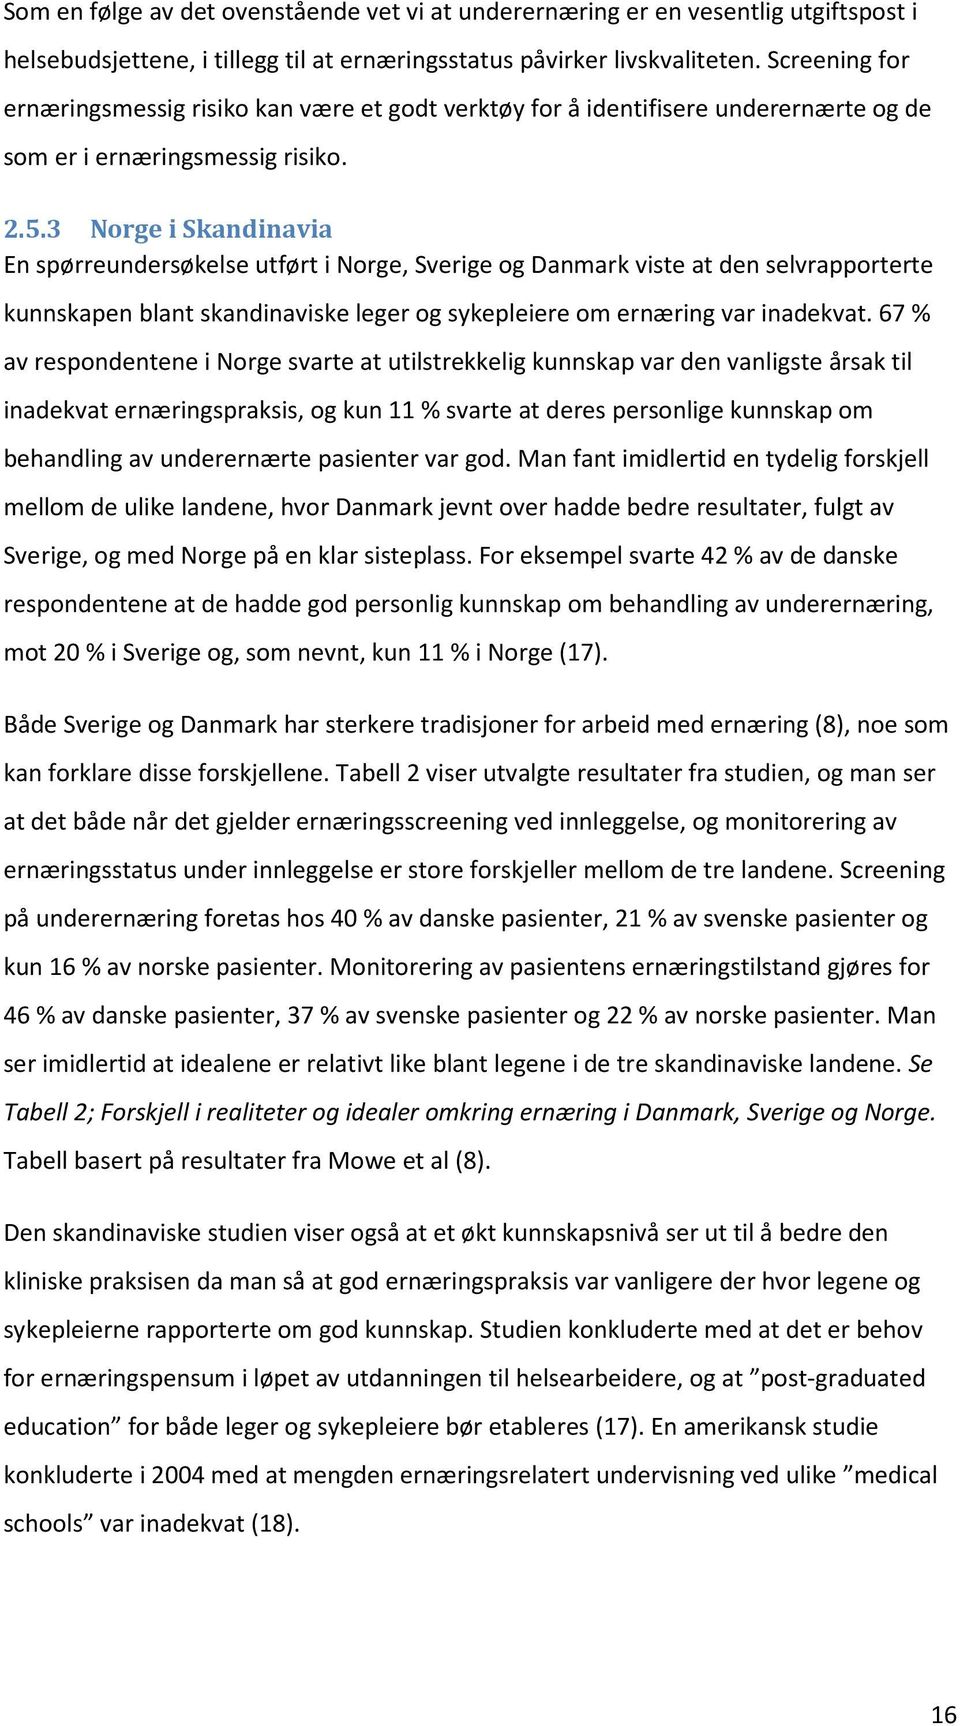 3 Norge i Skandinavia En spørreundersøkelse utført i Norge, Sverige og Danmark viste at den selvrapporterte kunnskapen blant skandinaviske leger og sykepleiere om ernæring var inadekvat.